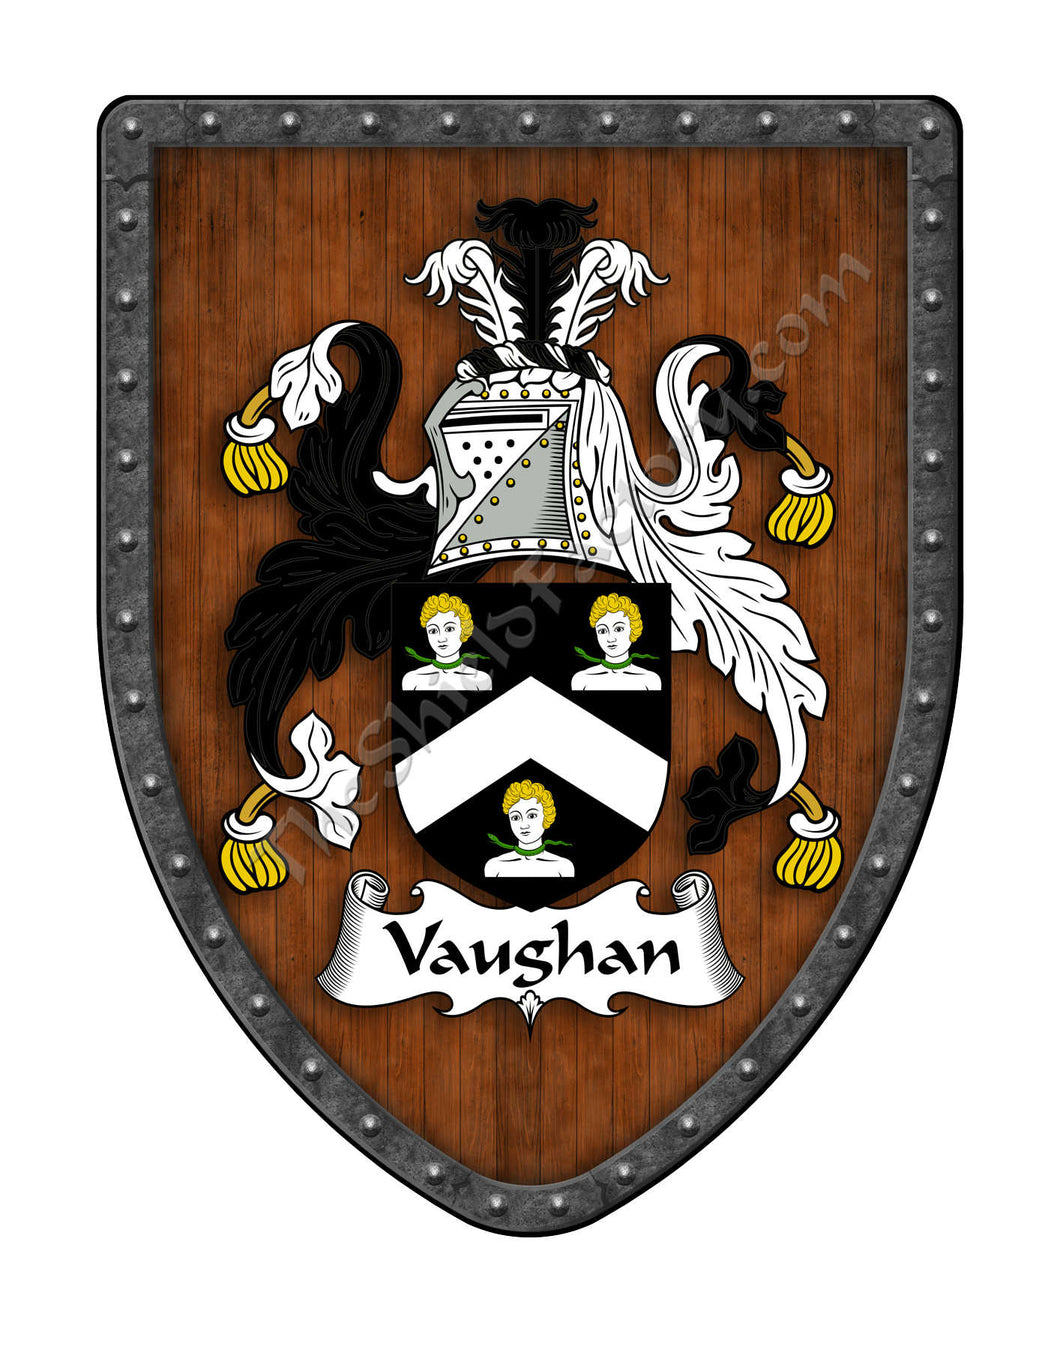 Vaughan (Wales)